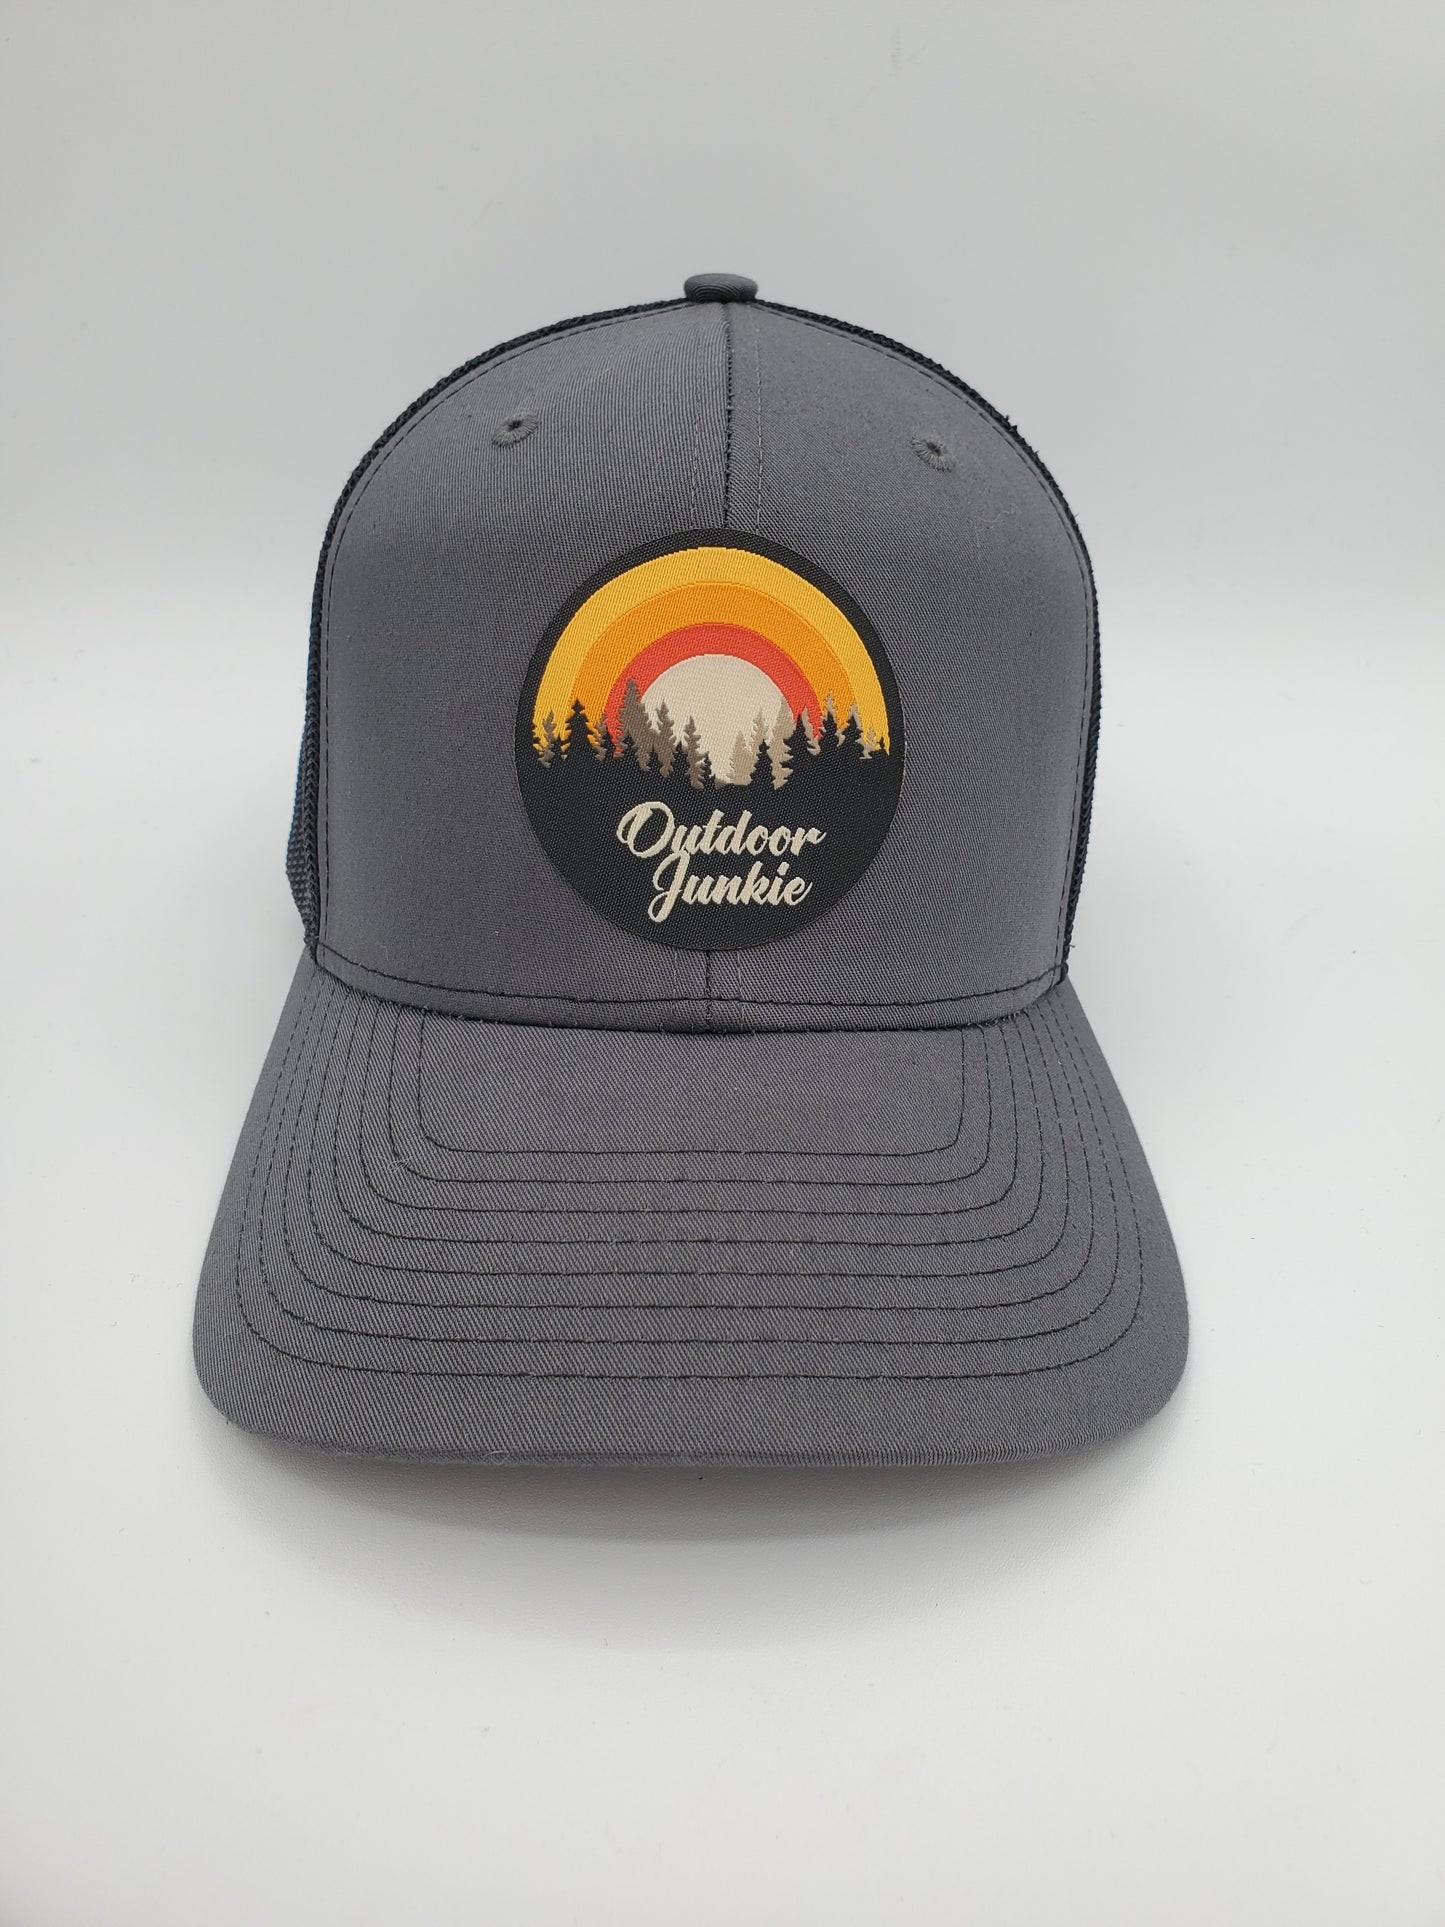 "Outdoor Junkie" Design Trucker Hat (Black Mesh/ Charcoal Fabric)